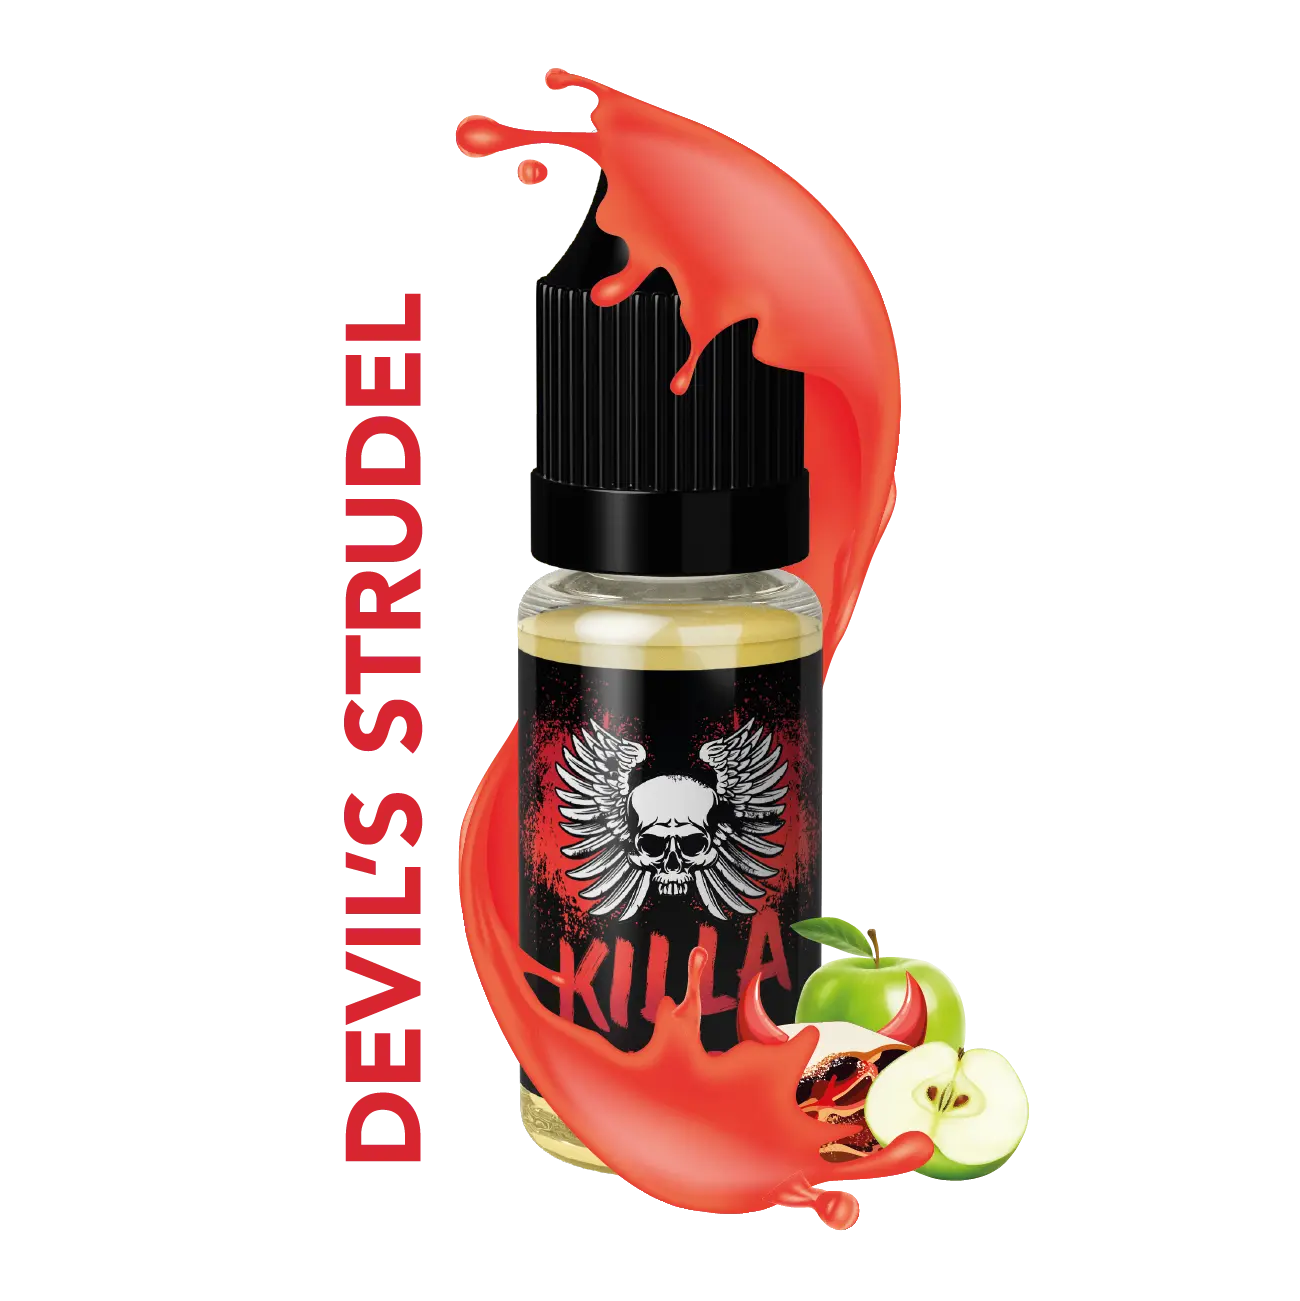 Killa Switch Devil's Strudel E-liquid